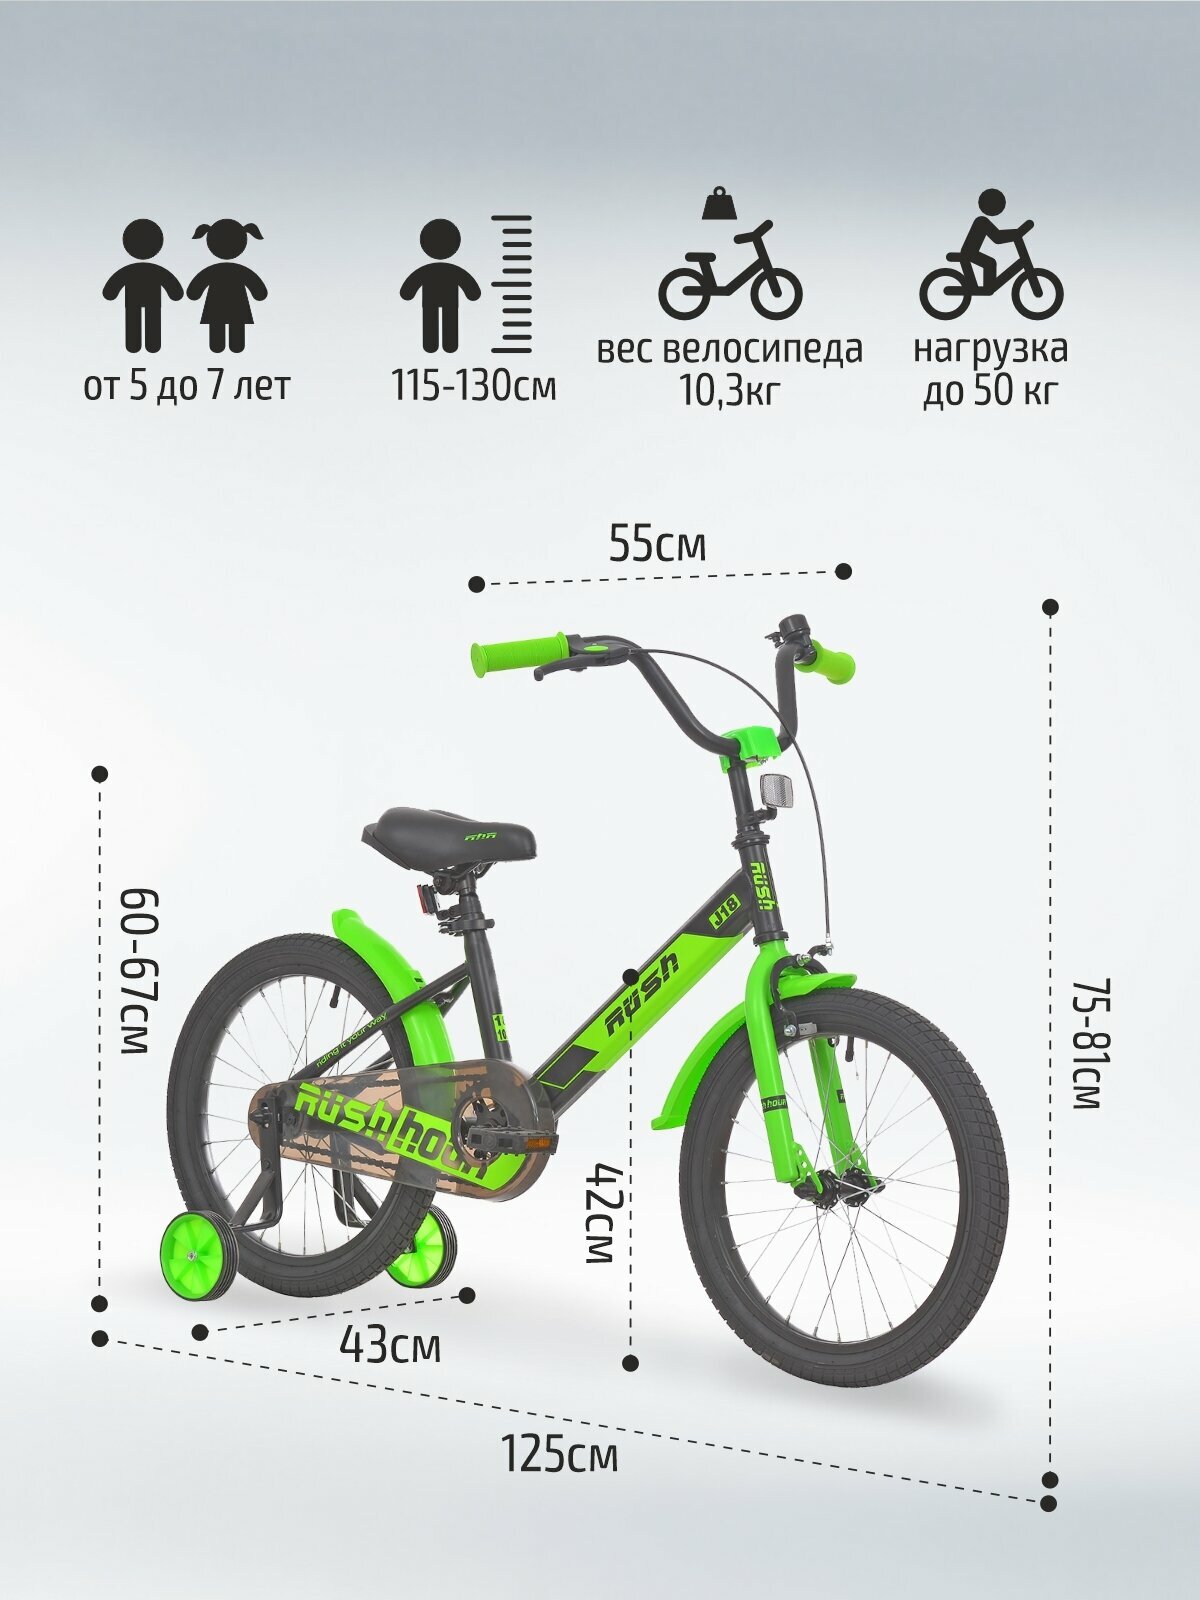 Велосипед двухколесный детский 18" дюймов RUSH HOUR J18 рост 115-130 см черный. Для девочки, для мальчиков 5 лет, 6 лет,7 лет, для дошкольников, для школьников, раш